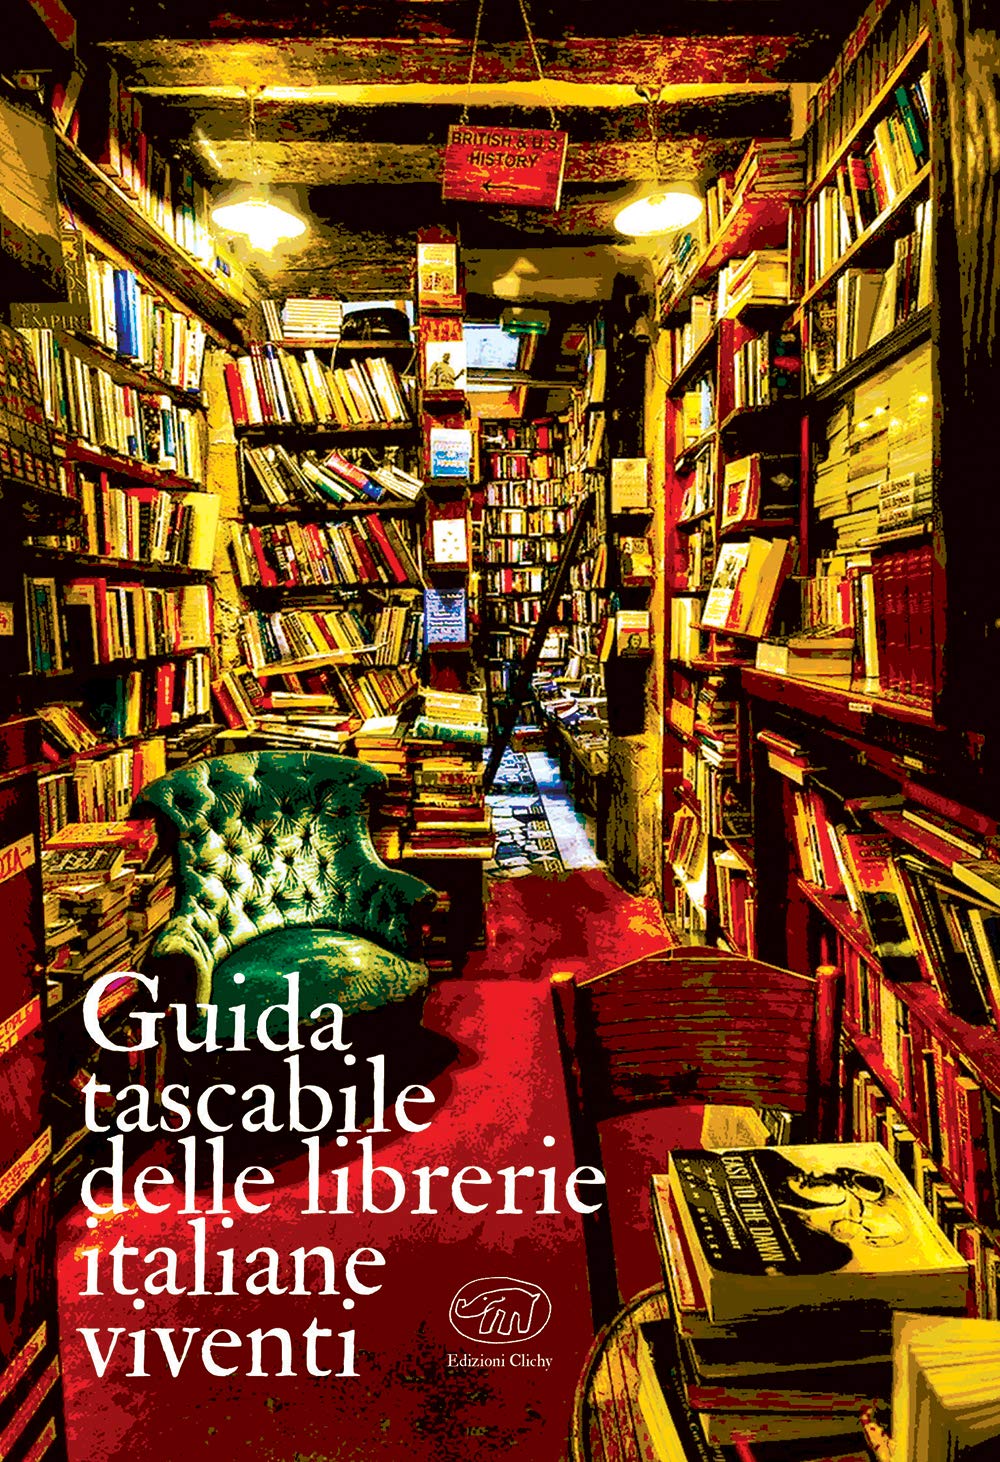 Guida tascabile delle librerie italiane viventi - Edizioni Clichy